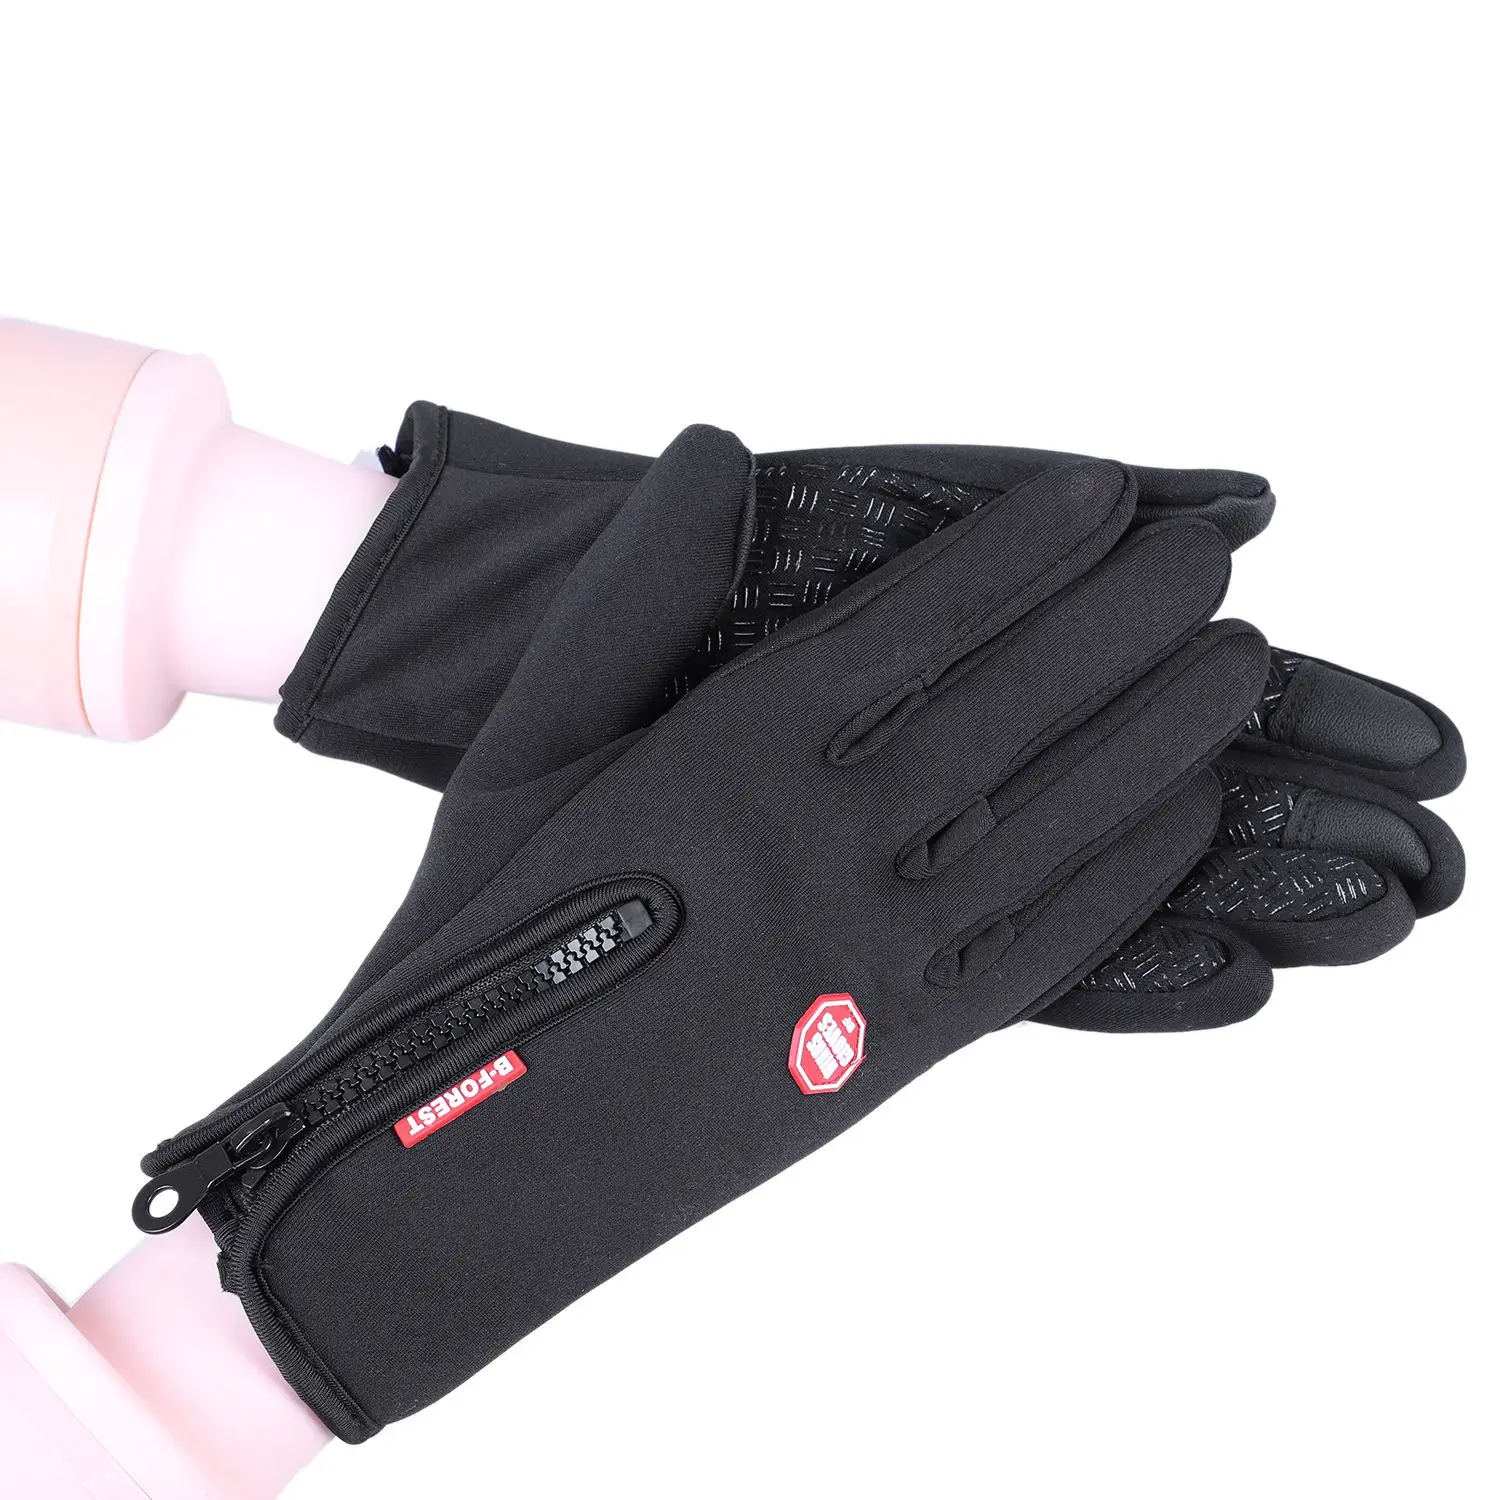 LGFM-1 пара велосипедных мотоциклетных перчаток полный палец Спорт на открытом воздухе сноуборд лыжные перчатки ветронепроницаемые сохраняющие тепло сенсорный экран